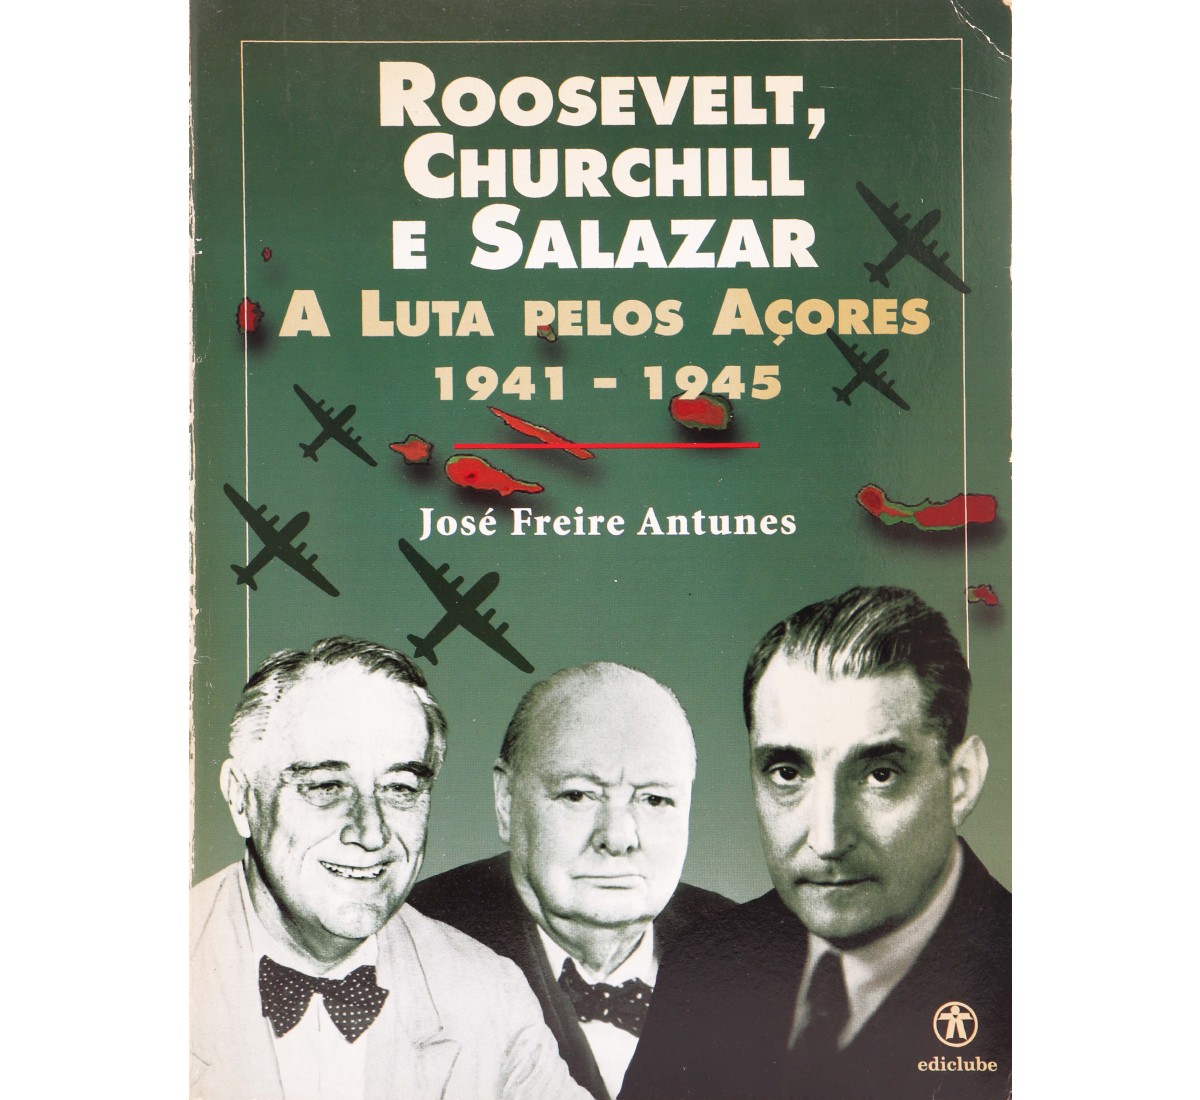 ROOSEVELT, CHURCHIL E SALAZAR - A LUTA PELOS AÇORES 1941-1945